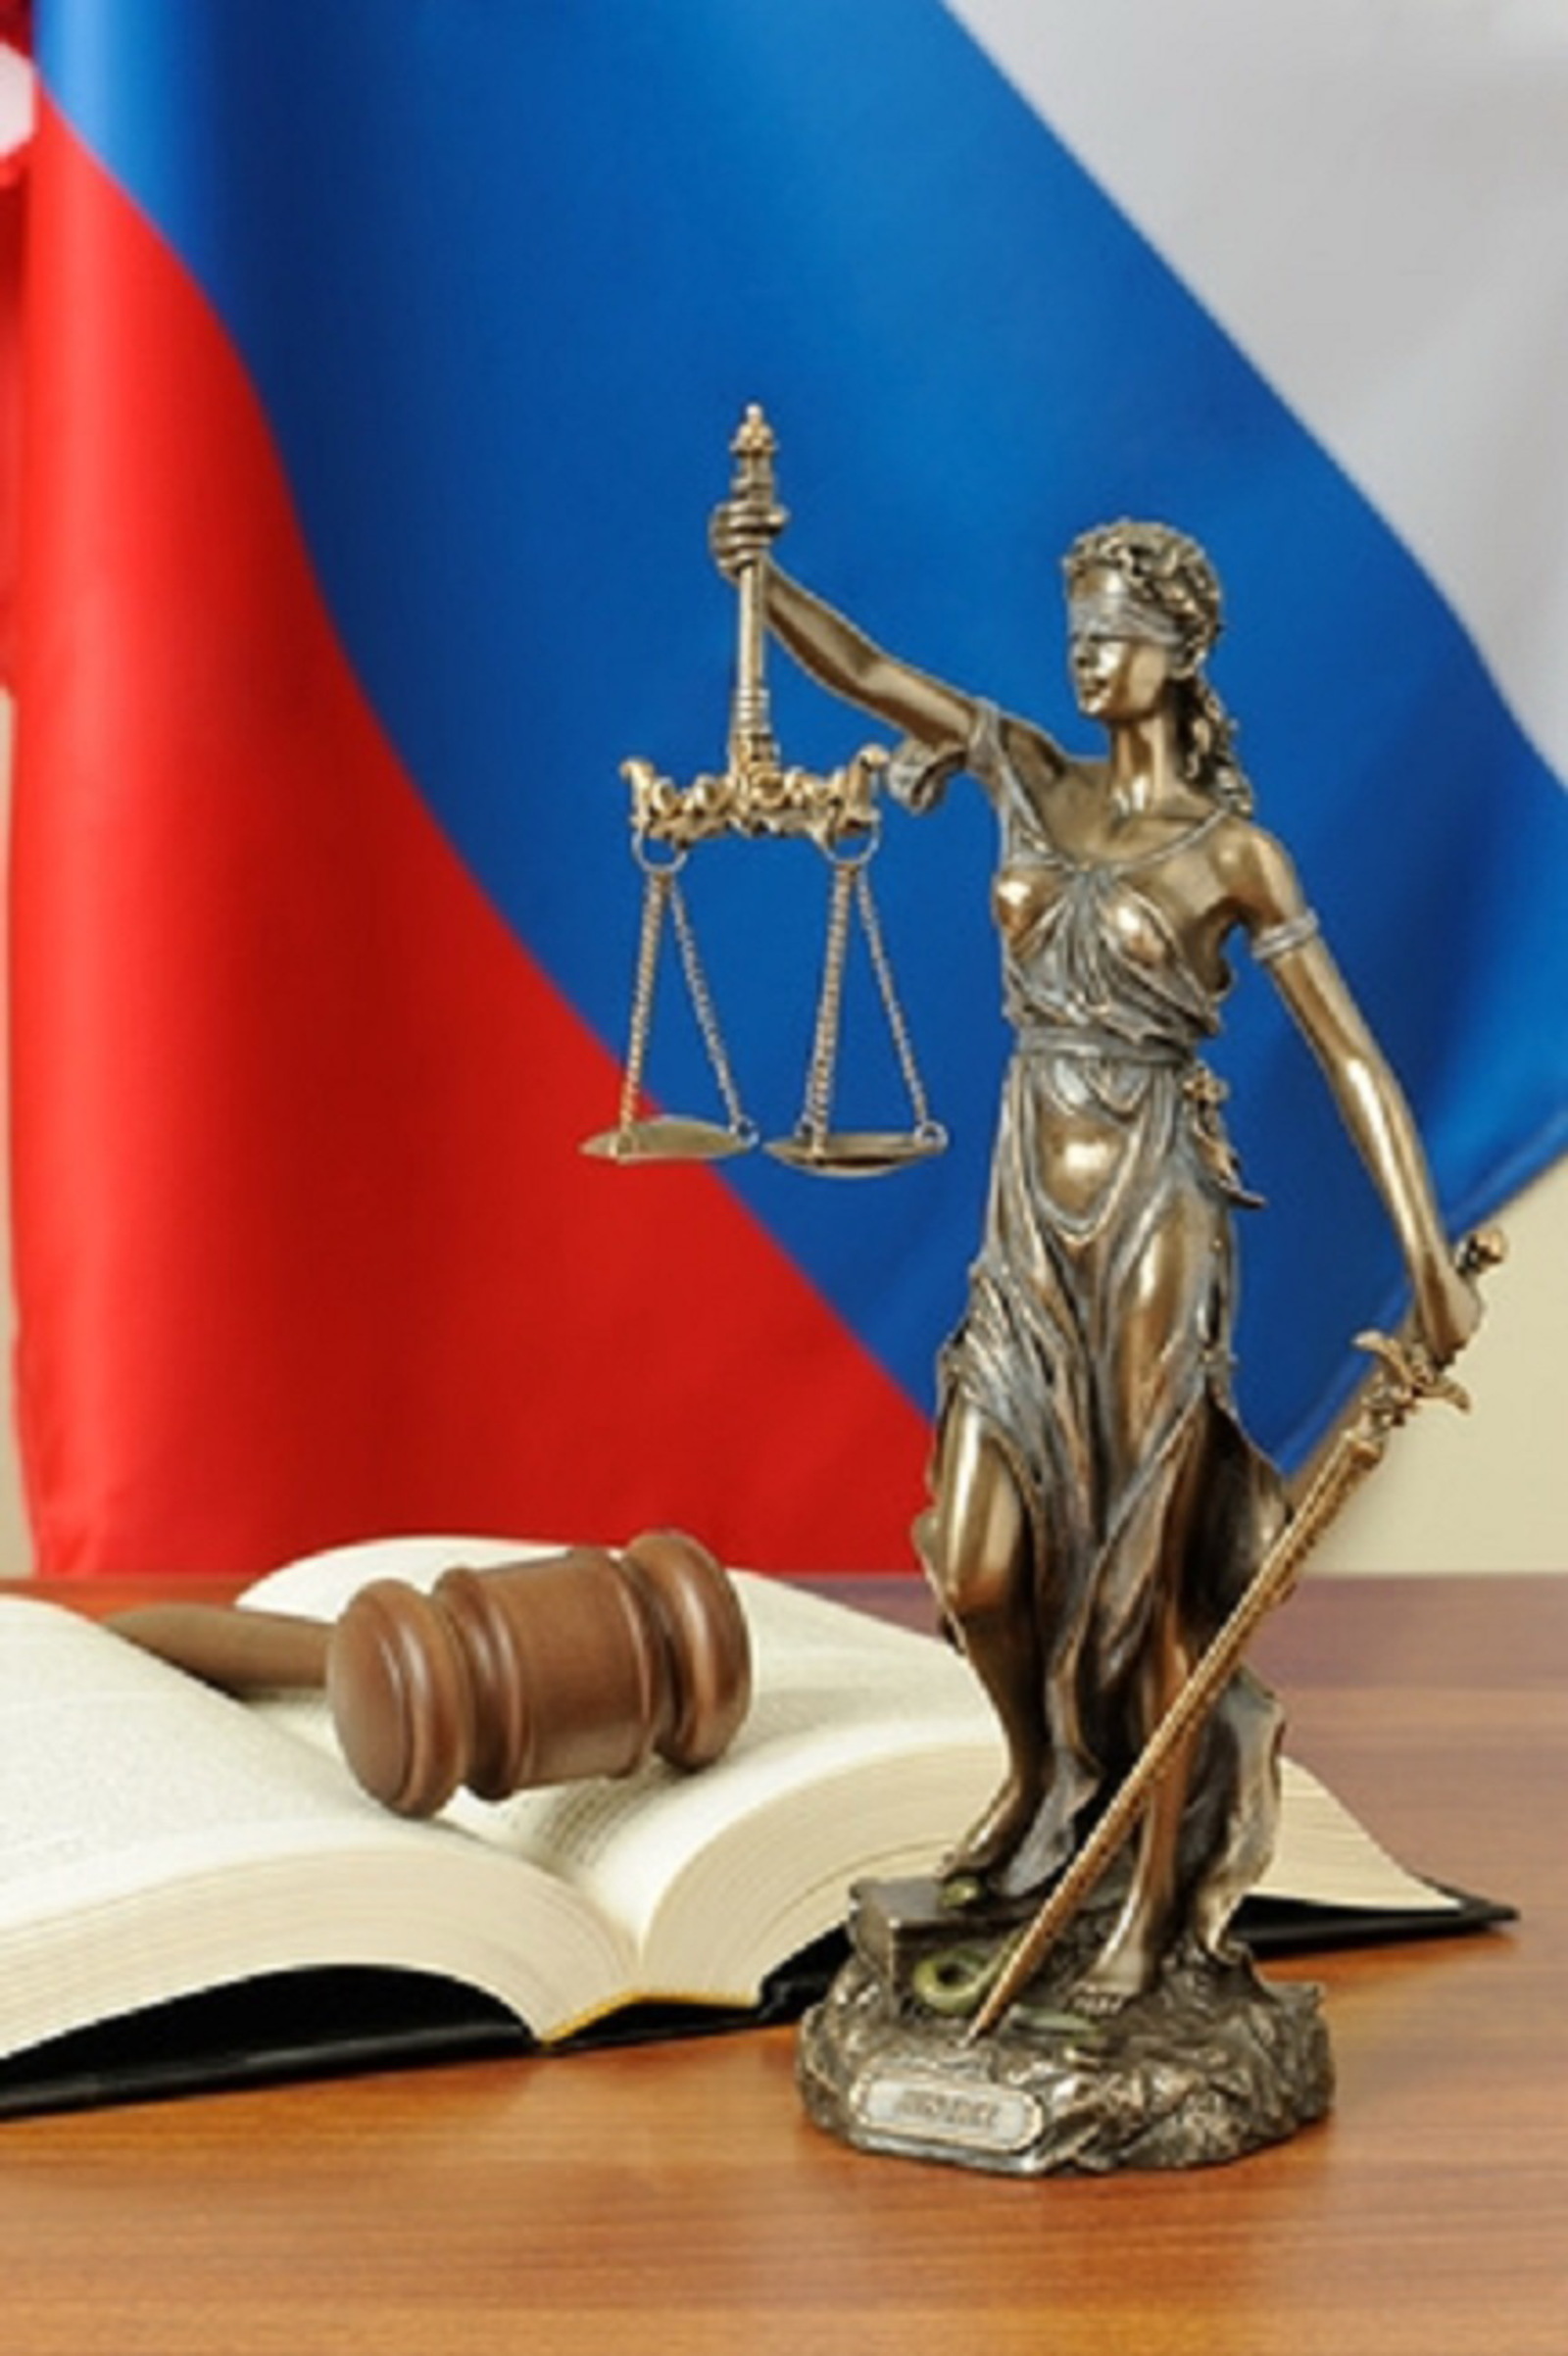 Белорецкий межрайонный суд рассмотрел гражданское дело по иску прокурора об устранении нарушений земельного законодательства